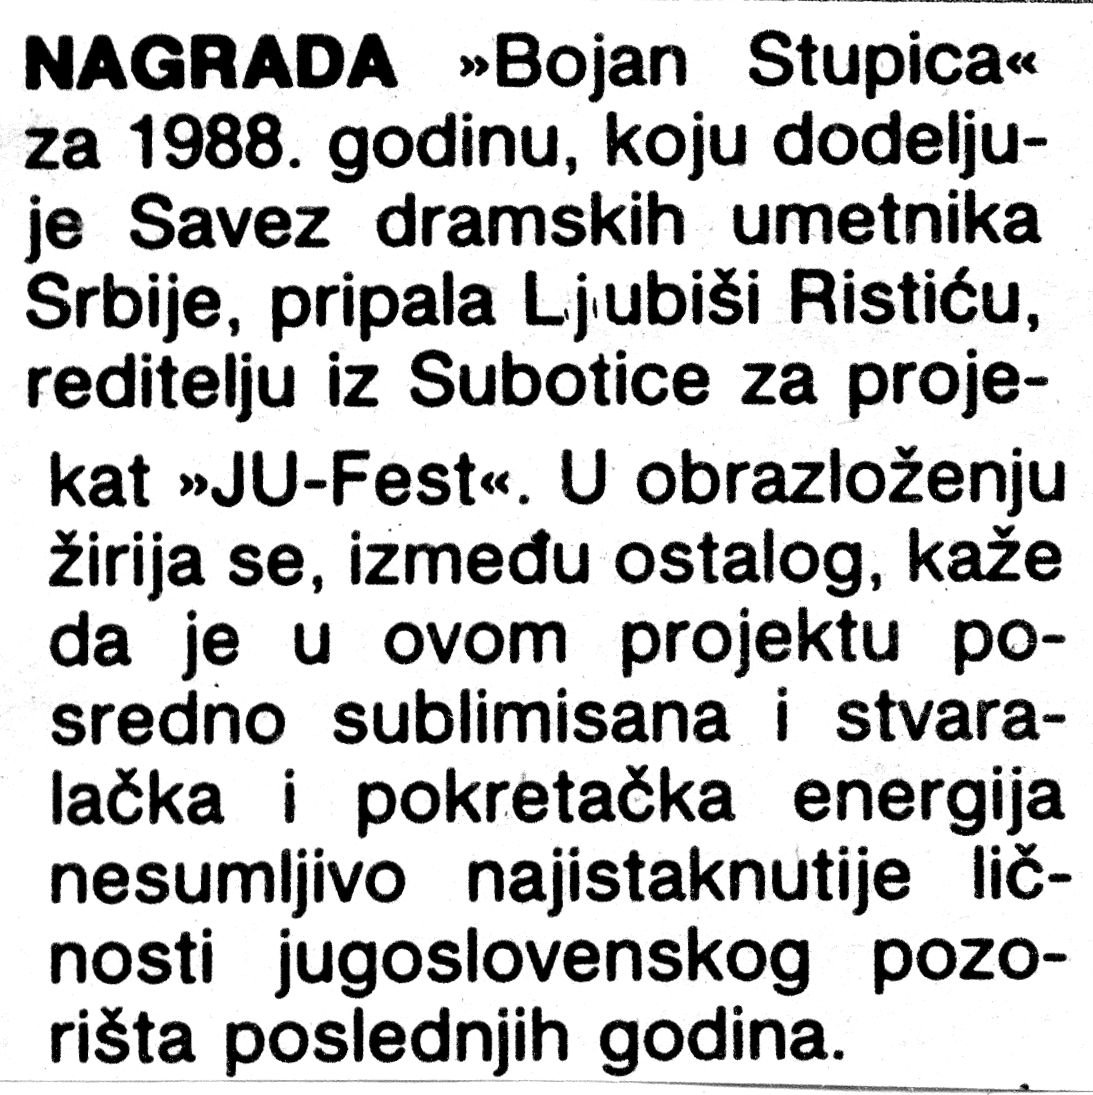 NOVOSTI8-130789-NAGRADA_BOJAN_STUPICA_RISTICU